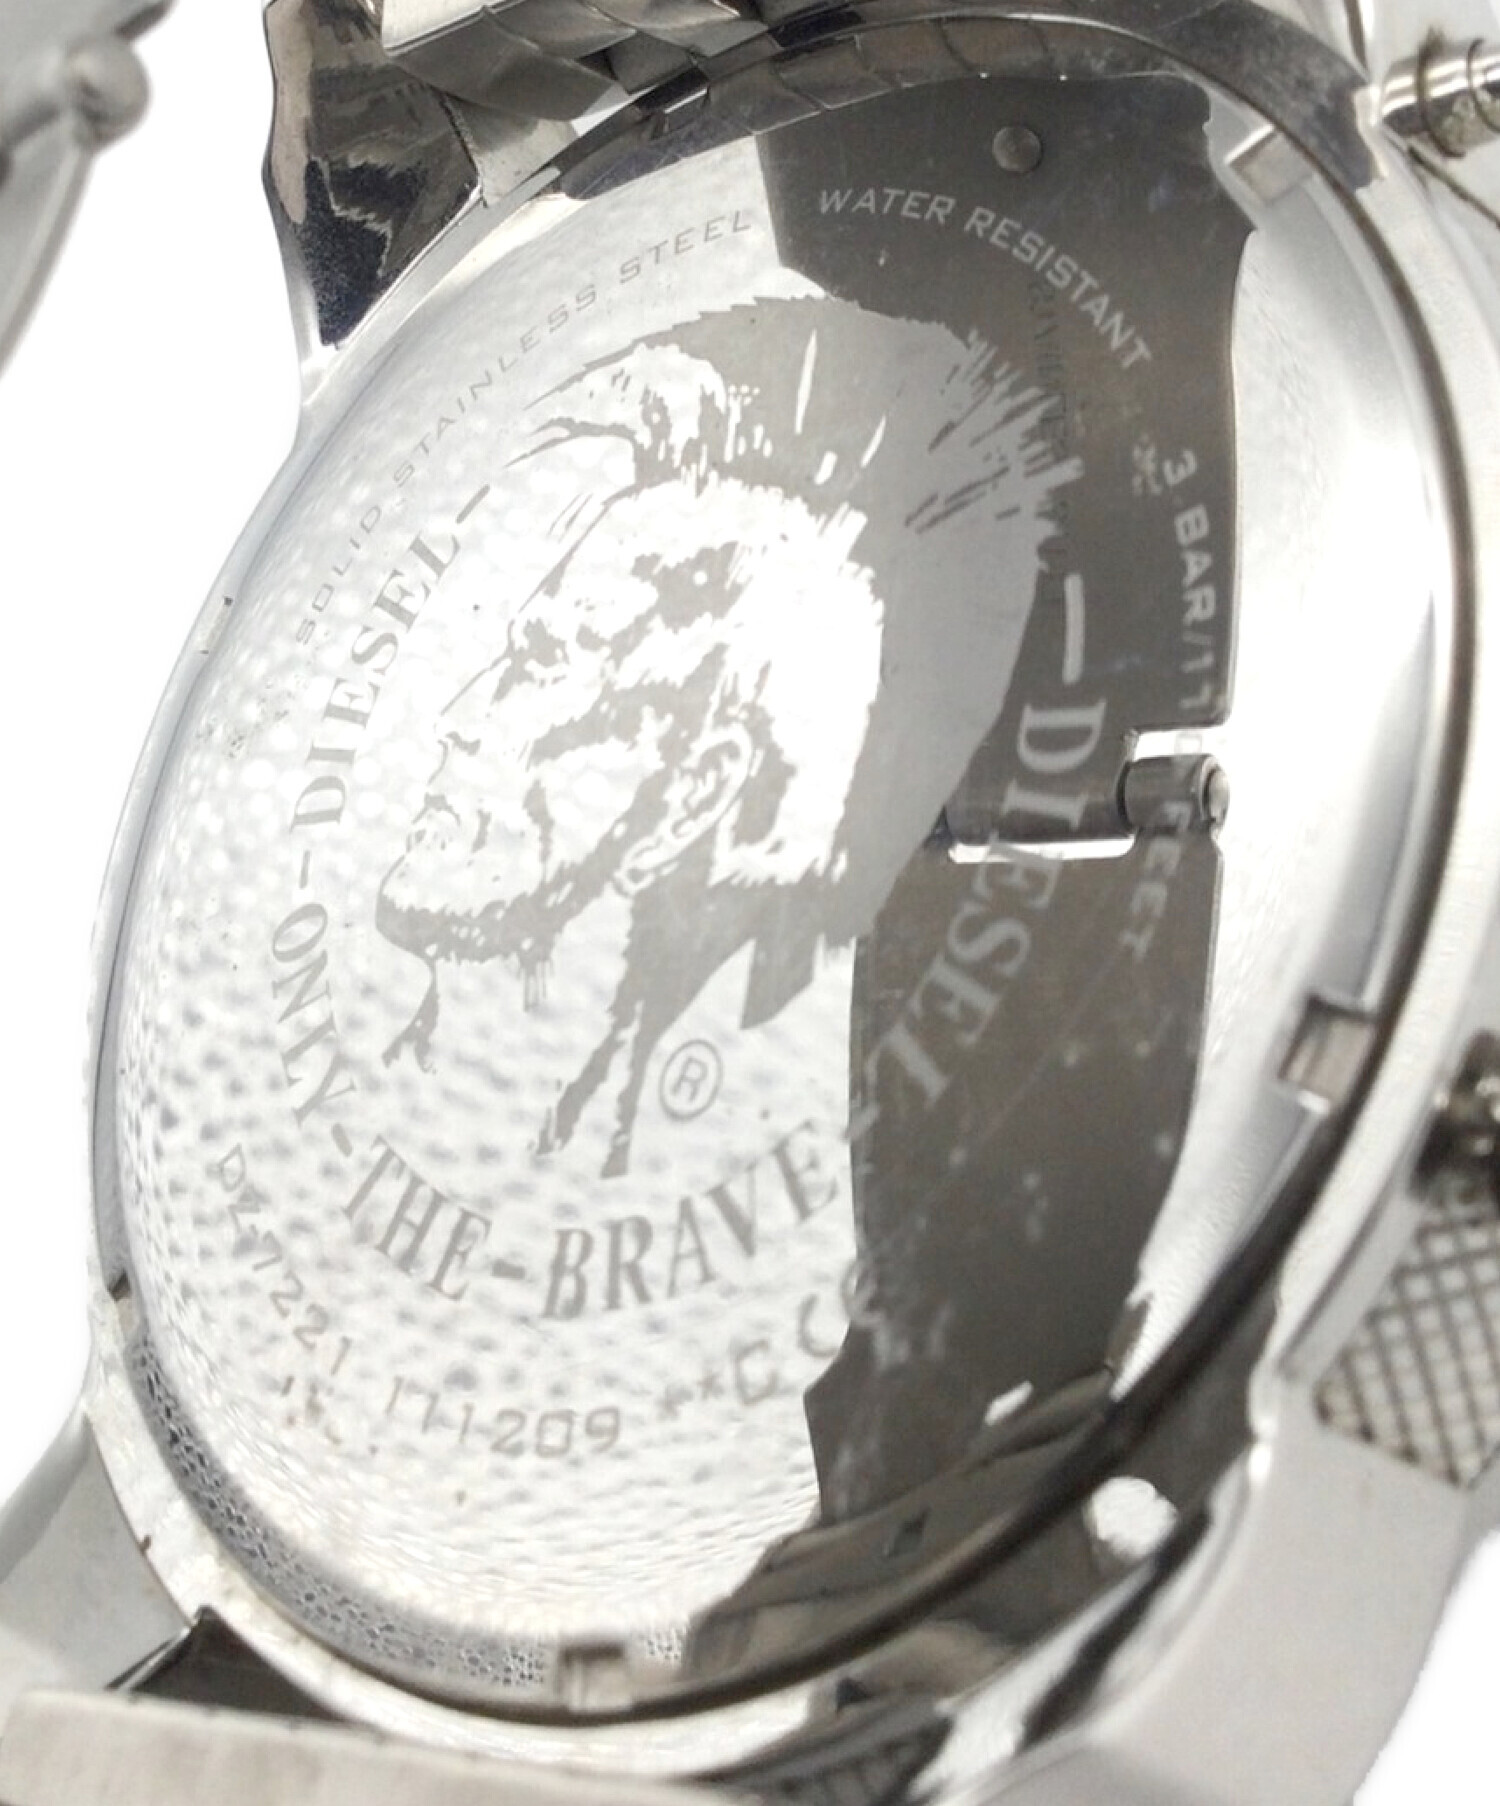 DIESEL (ディーゼル) 腕時計 DZ-7221 ブラック